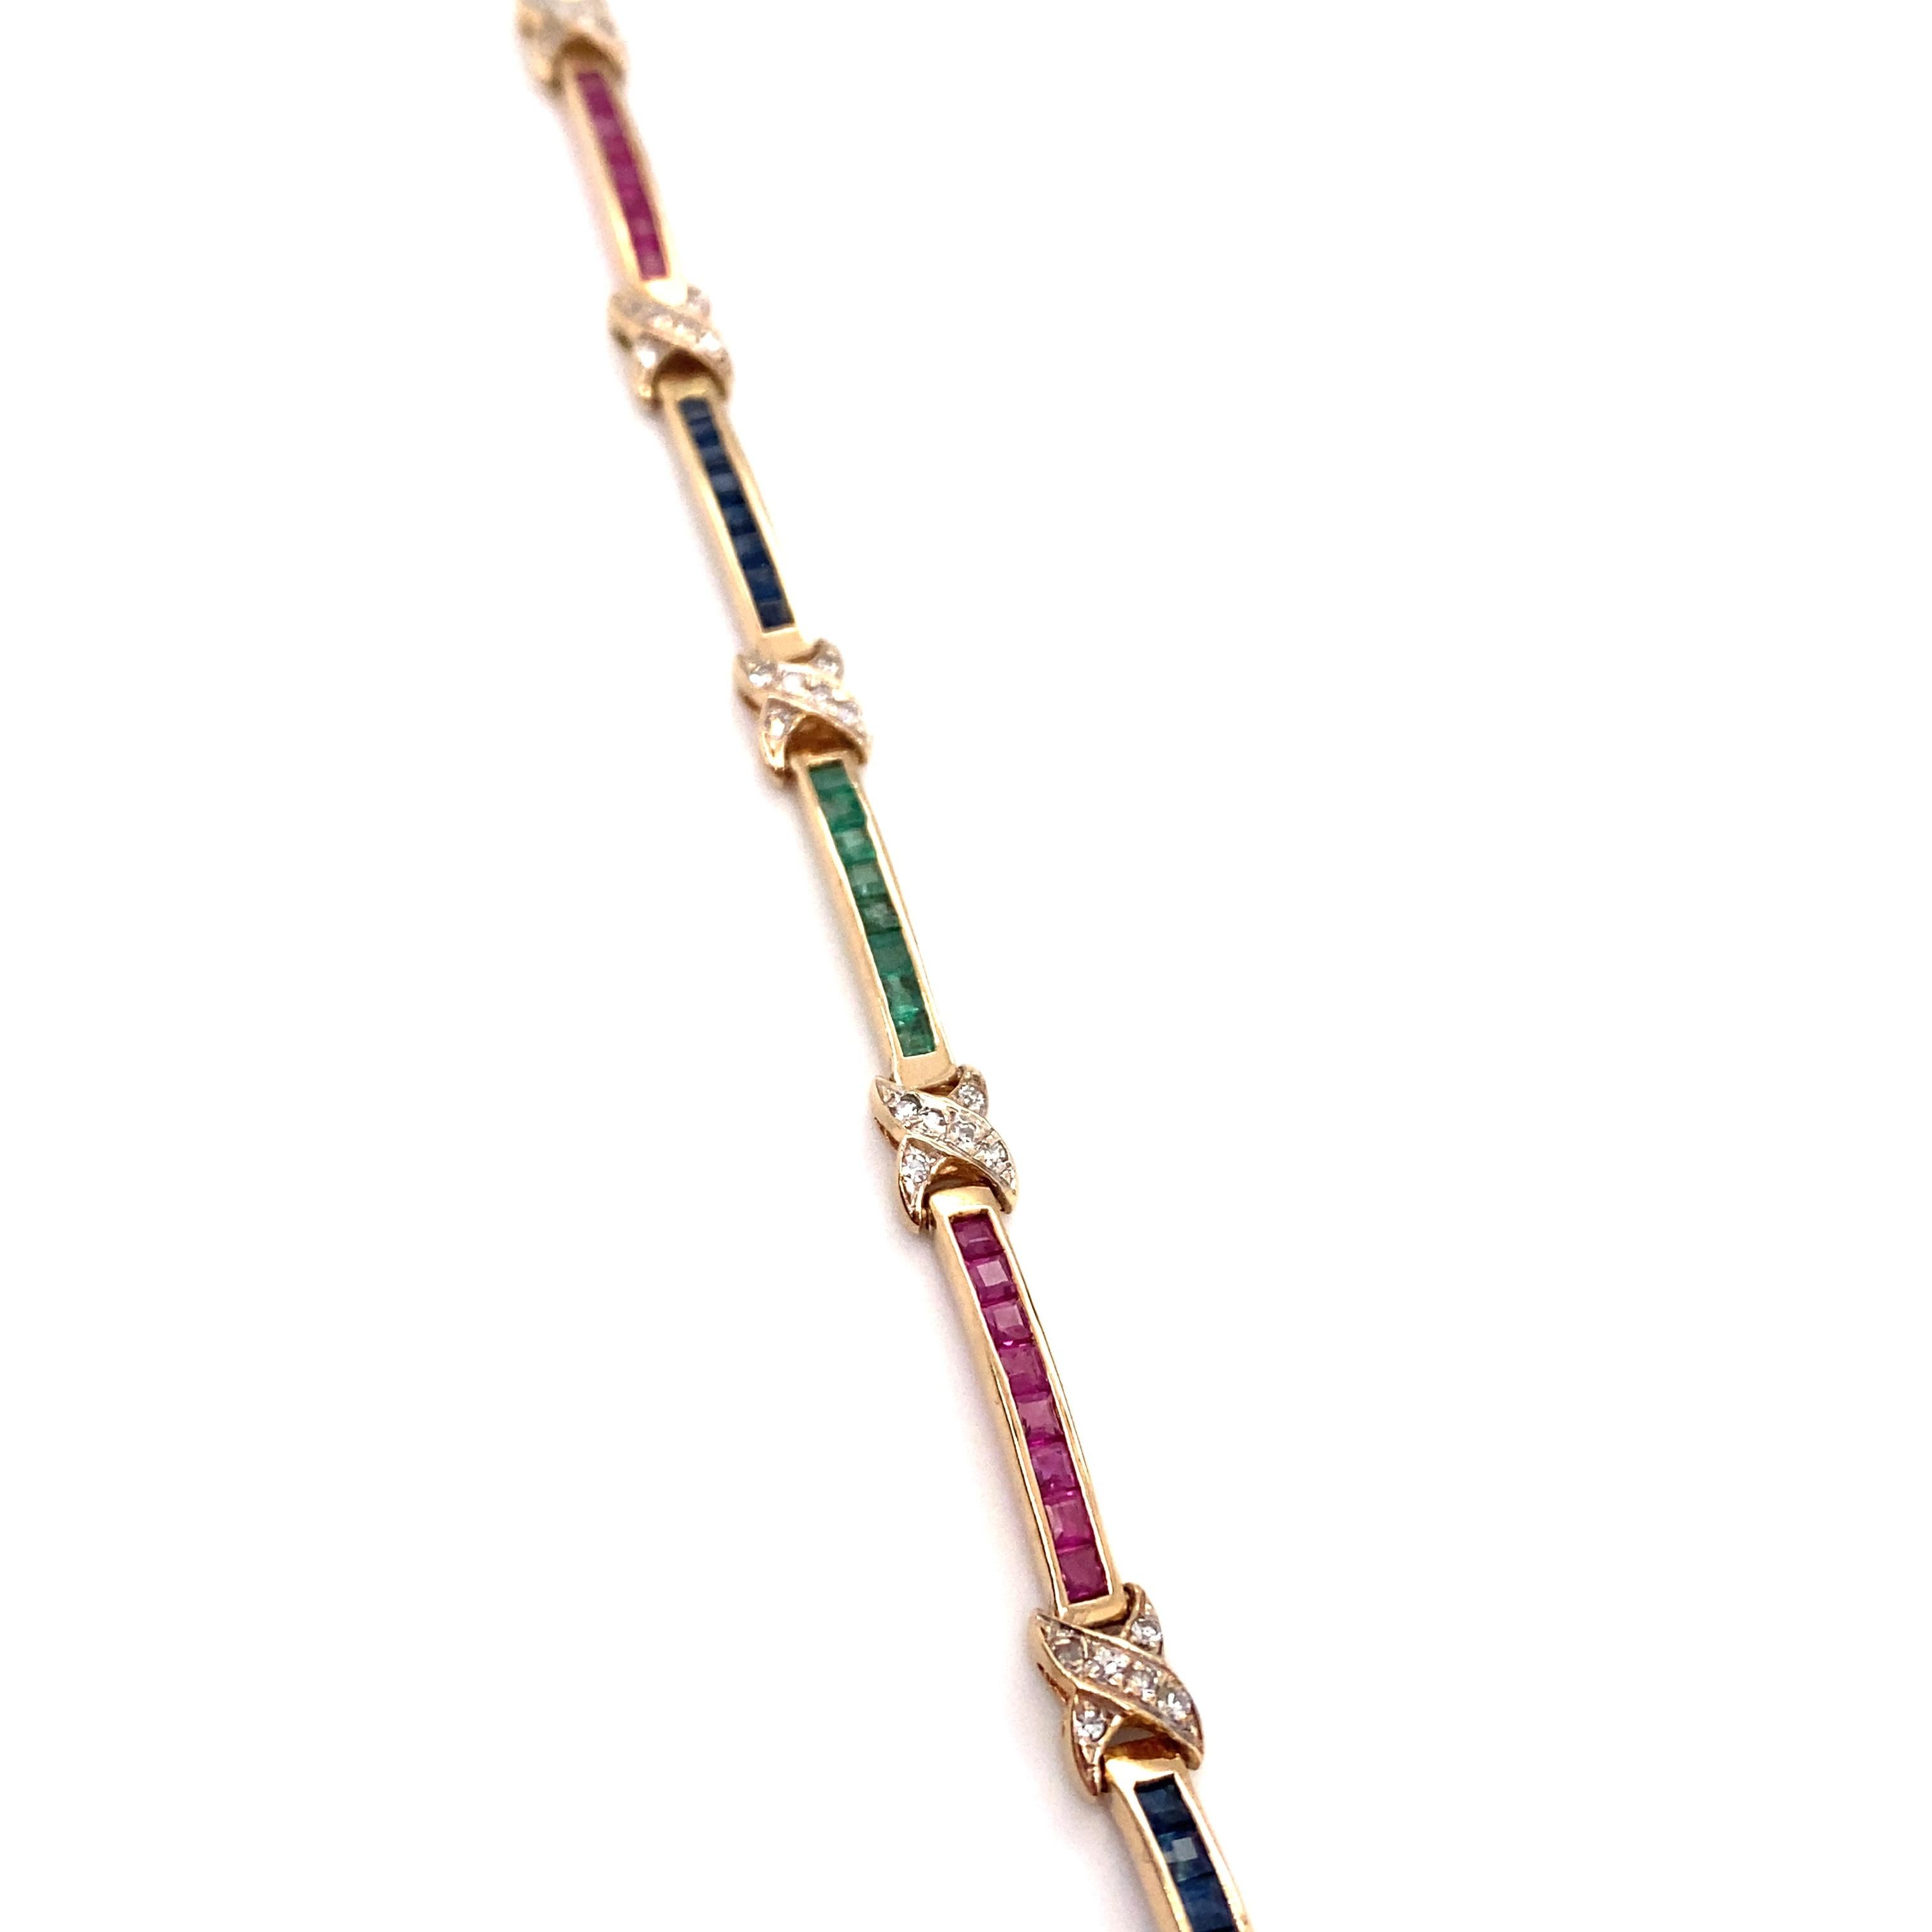 Artikel-Details: Dieses Armband im Tutti Frutti-Stil besteht aus Gliedern mit Smaragden, Saphiren, Rubinen und Diamanten in einem Kanal-Design.

Ungefähr: 1980er Jahre
Metall Typ: 14k Gold
Gewicht: 9,5 Gramm 
Abmessungen: 7.75in Länge